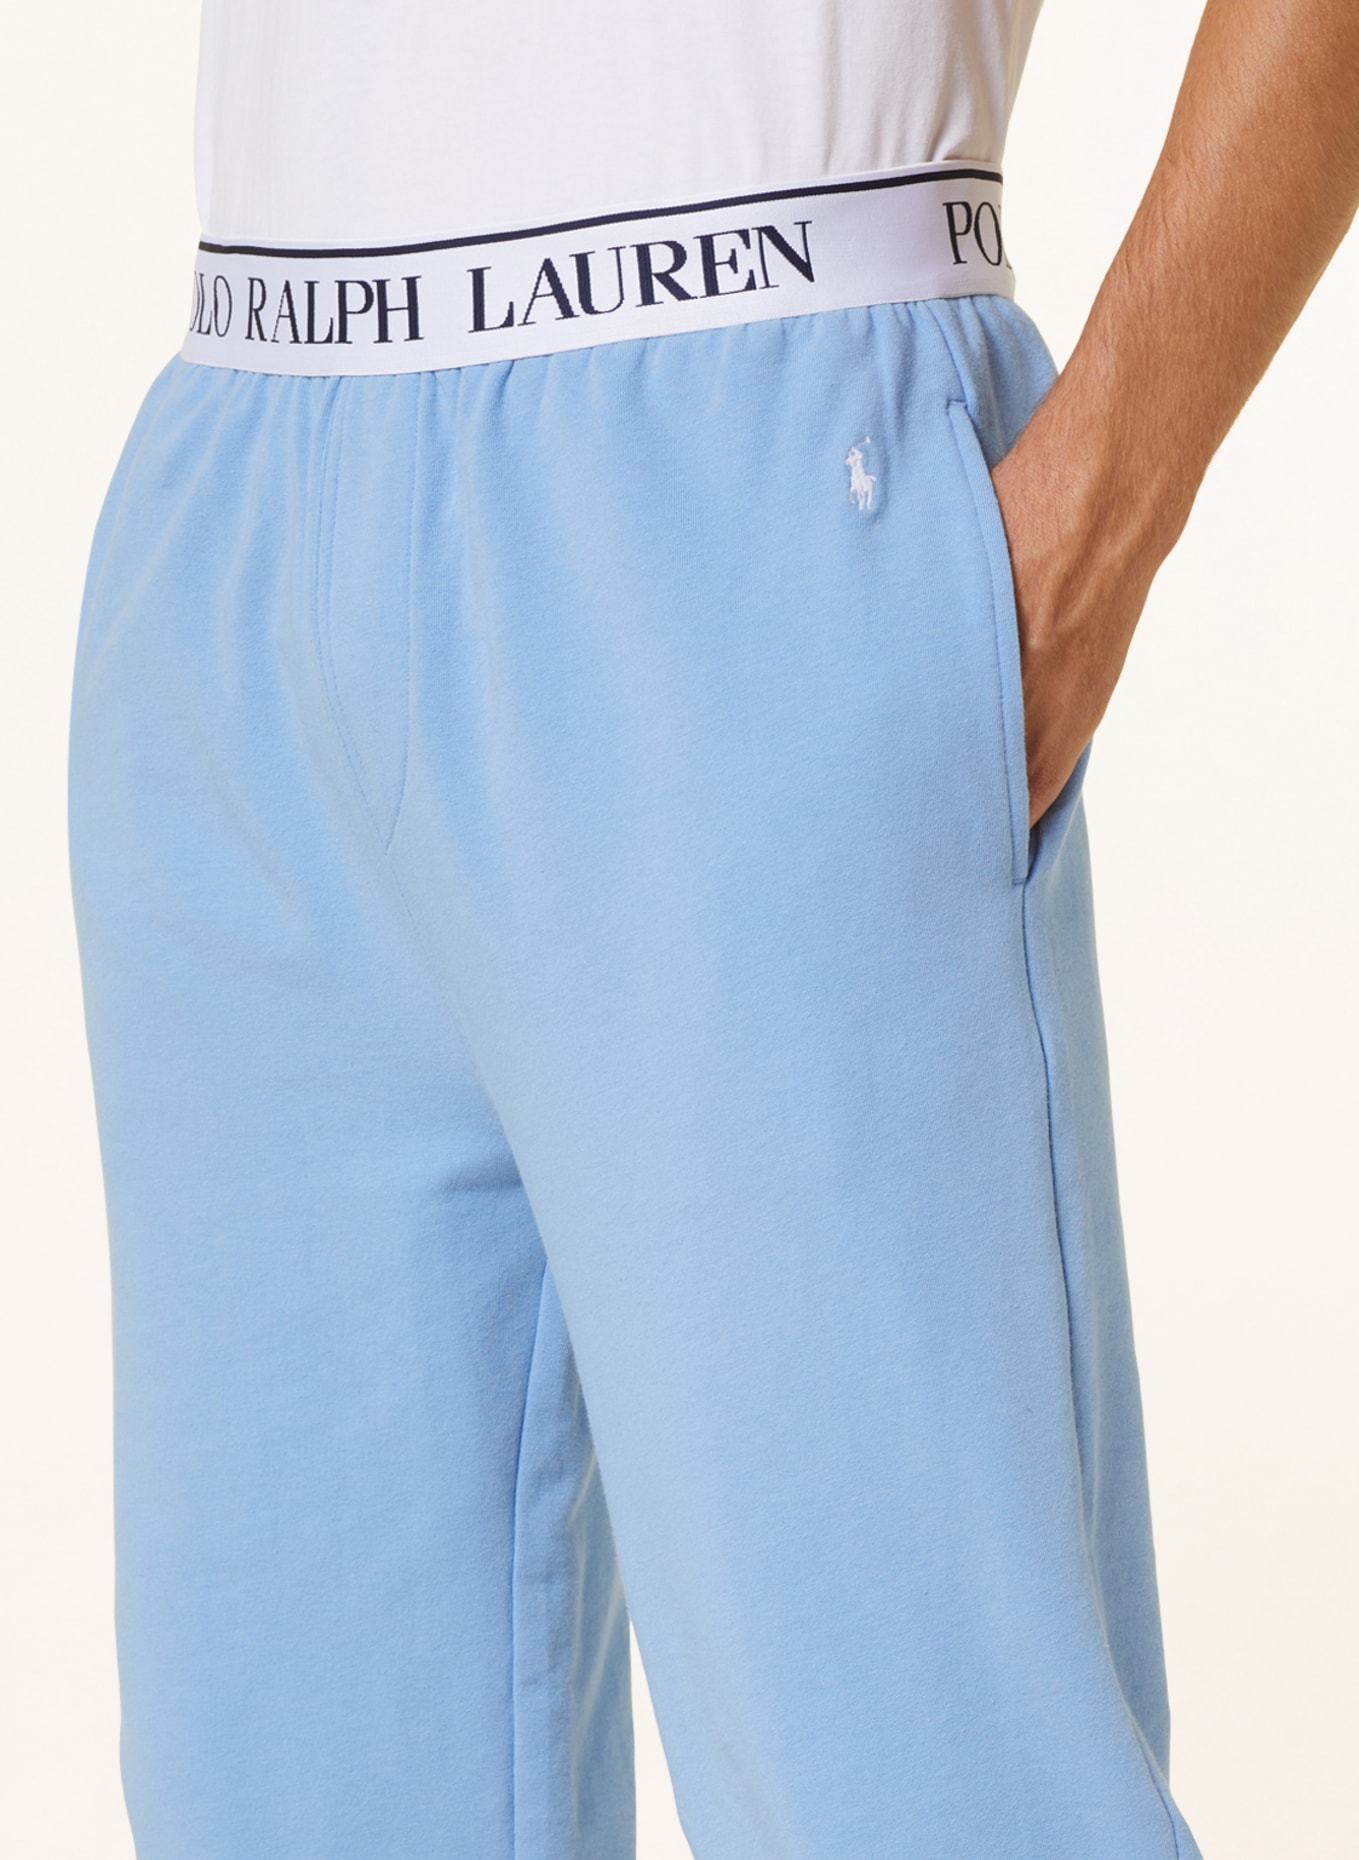 POLO RALPH LAUREN Lounge pants, Color: LIGHT BLUE (Image 5)